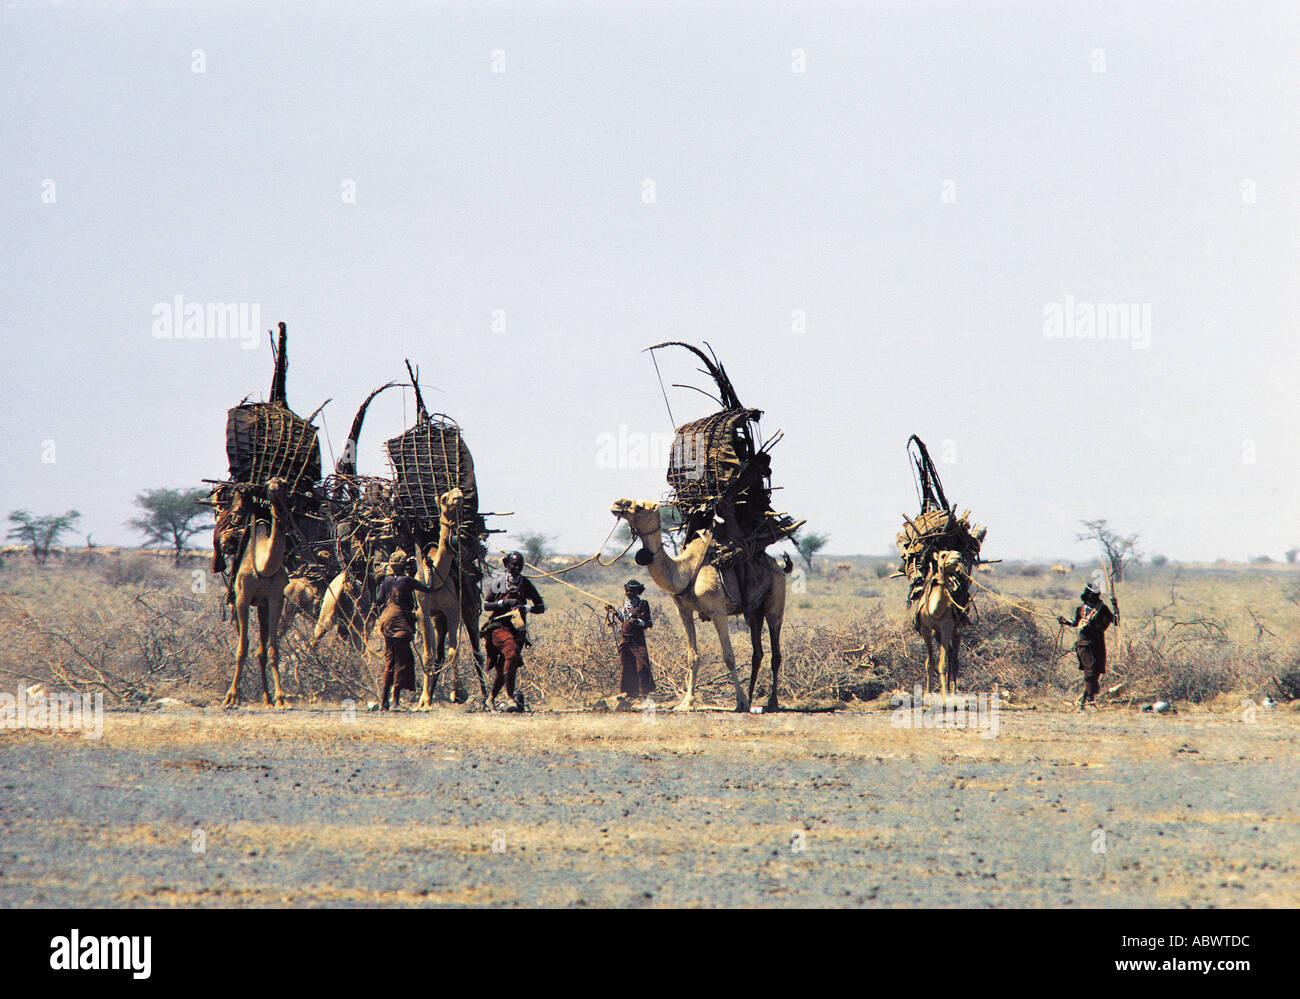 Las mujeres Gabbra cargando camellos con sus pertenencias antes de migrar a una nueva área Foto de stock